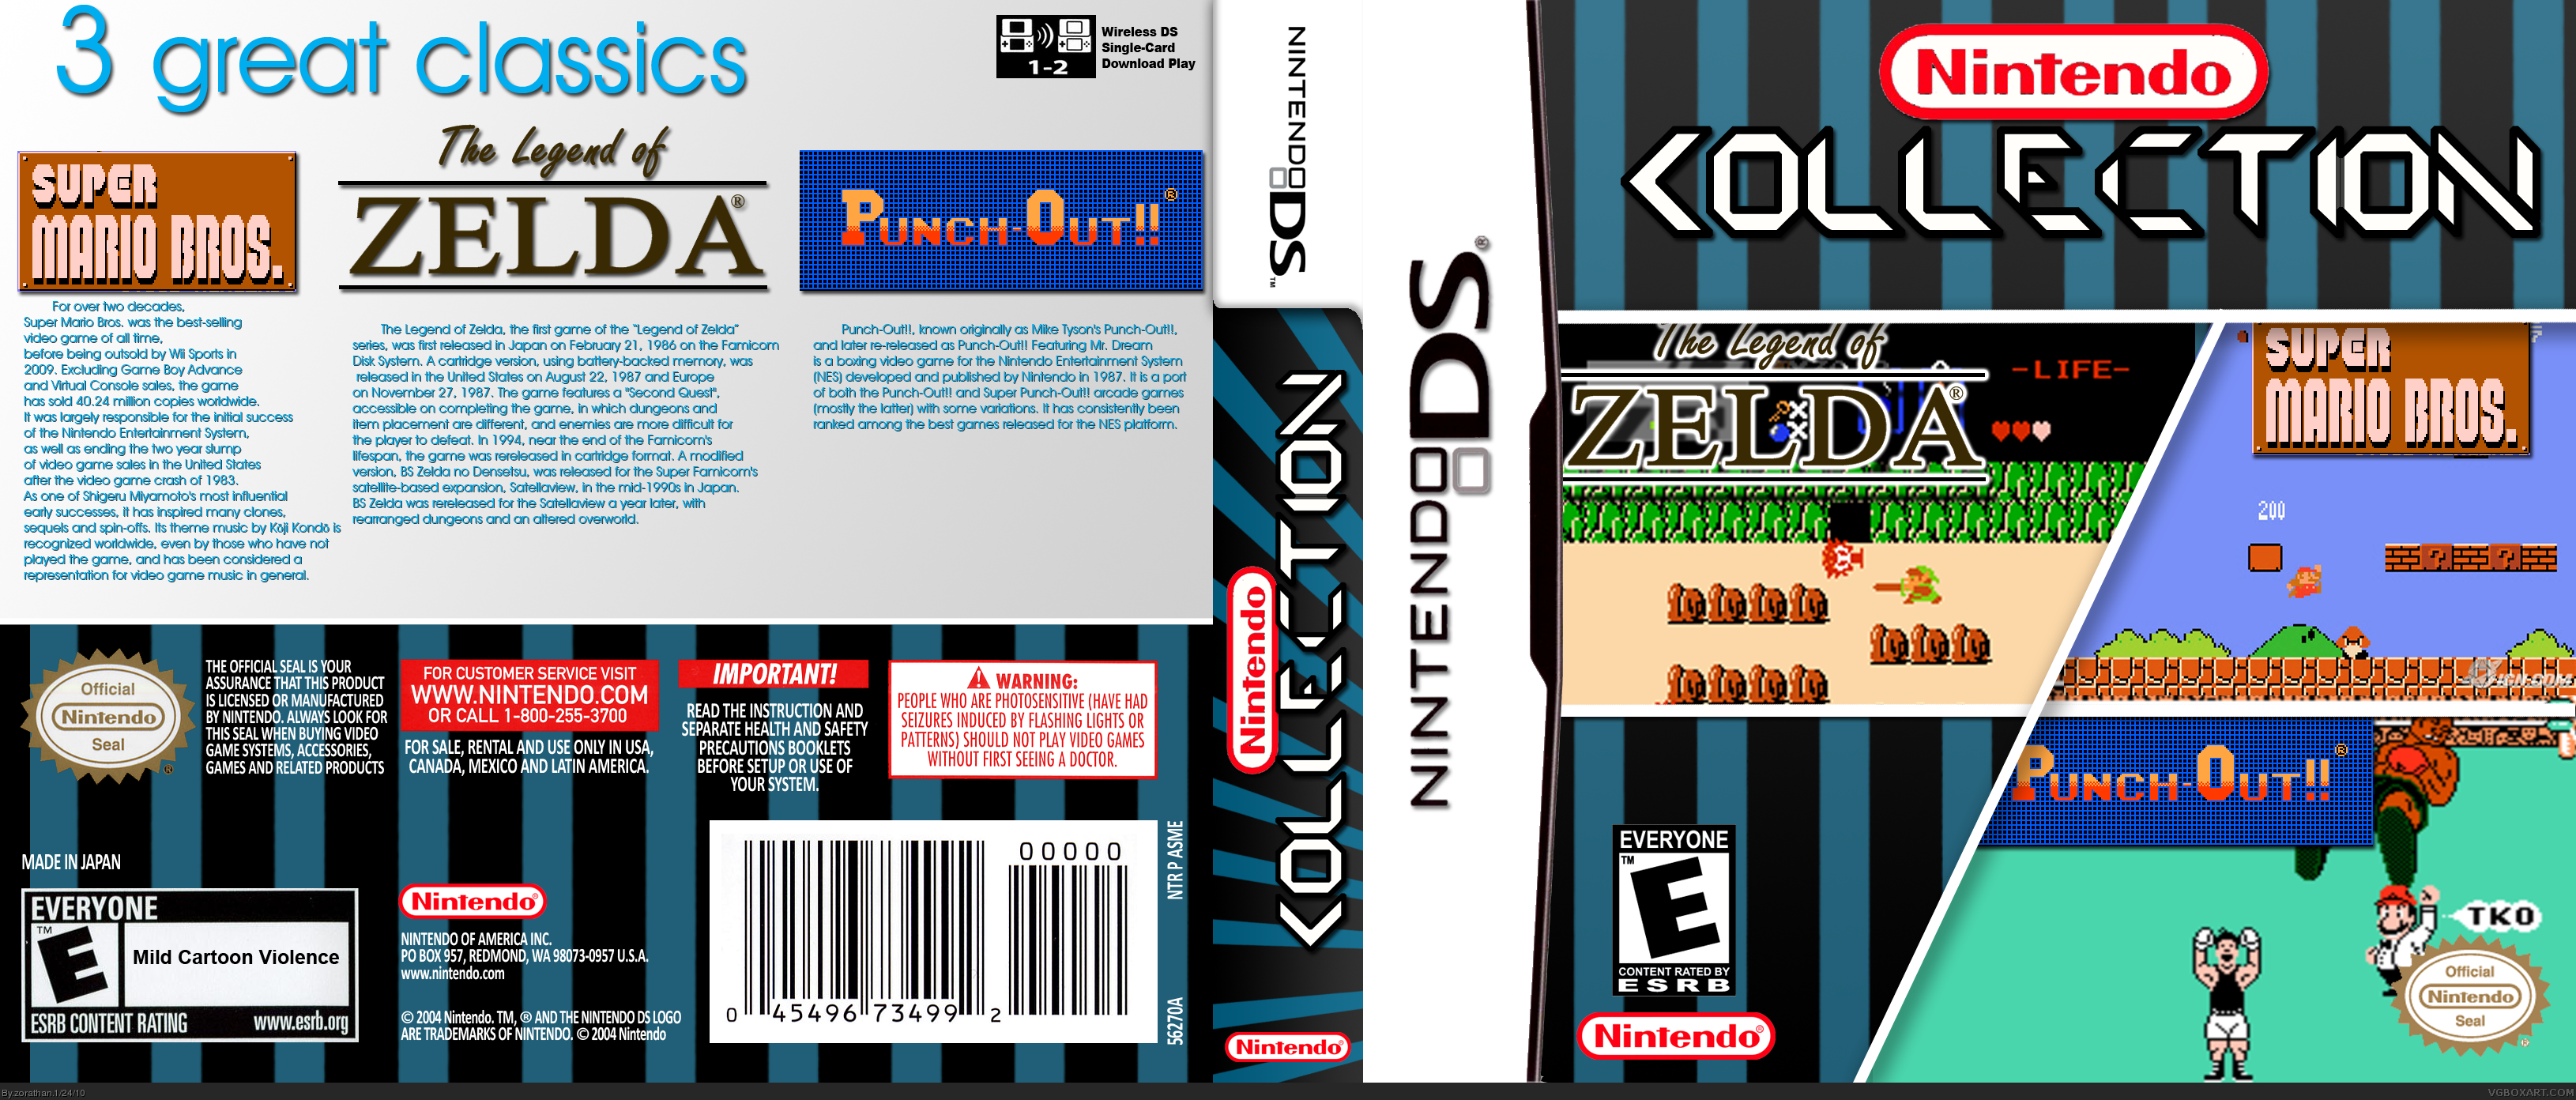 Nintendo Collection box cover